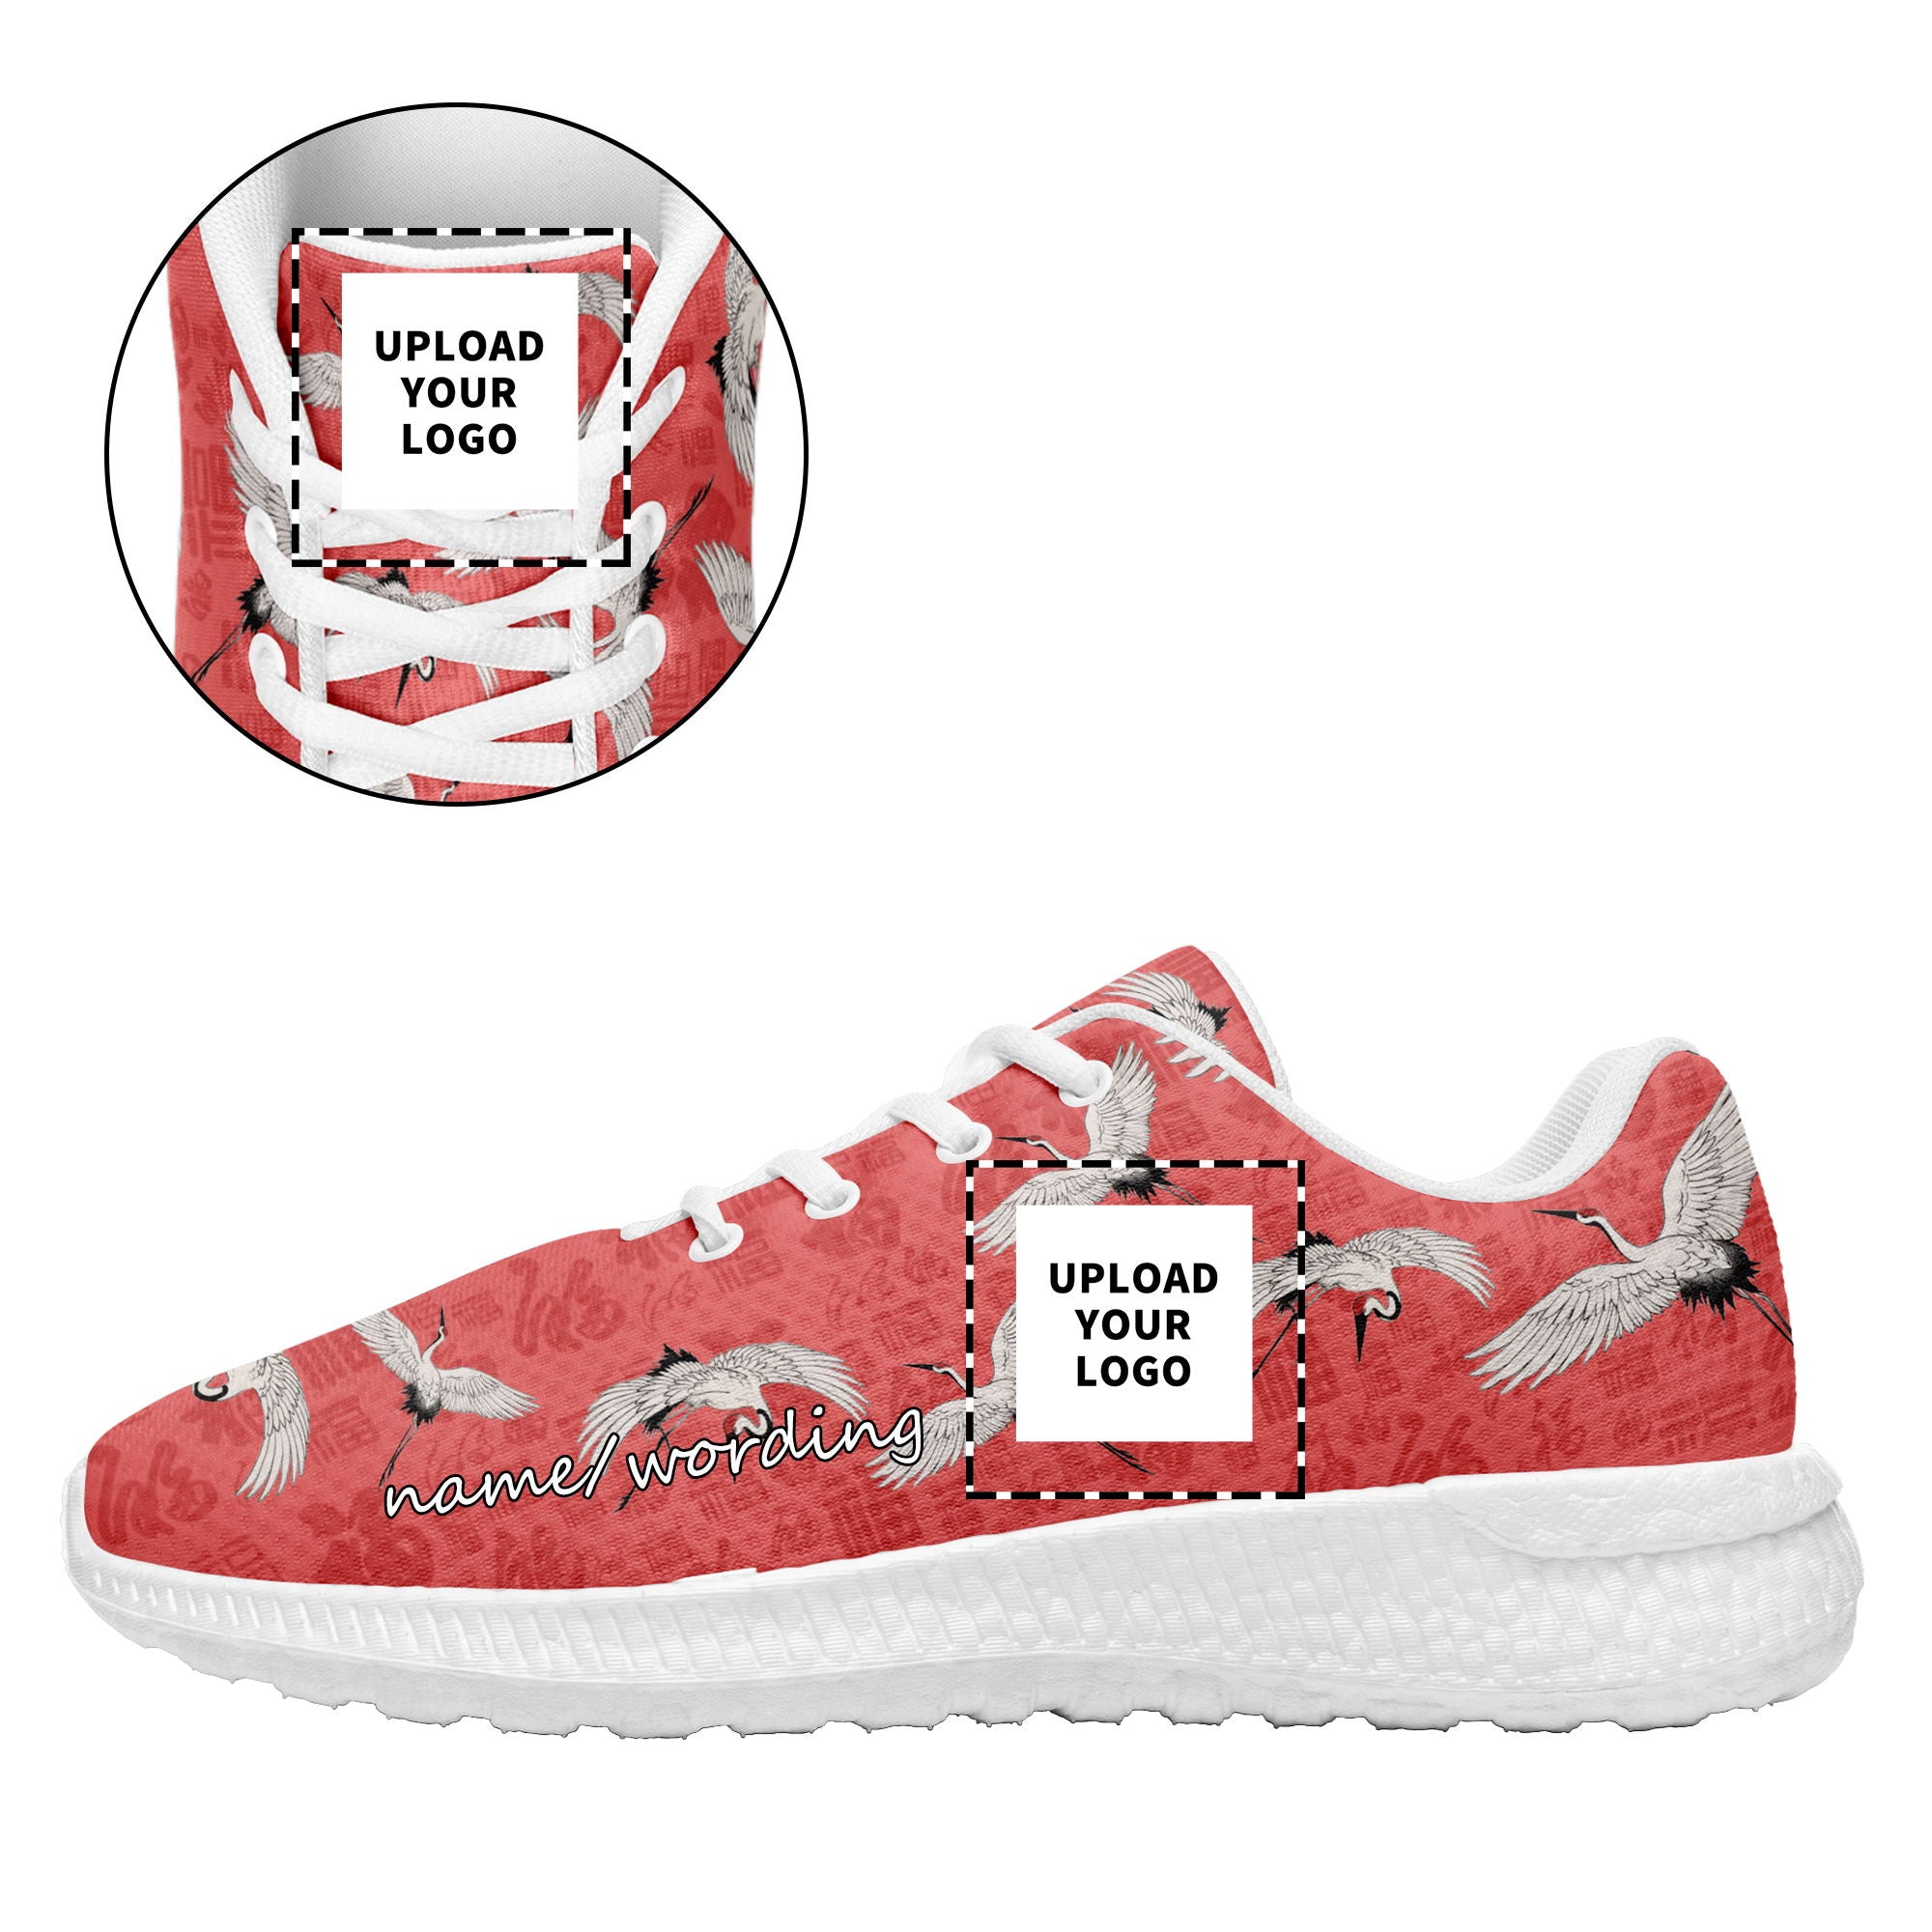 个性化设计定制打印LOGO时尚湄洲妈祖主题运动鞋红色白底BLD2-2428010_7